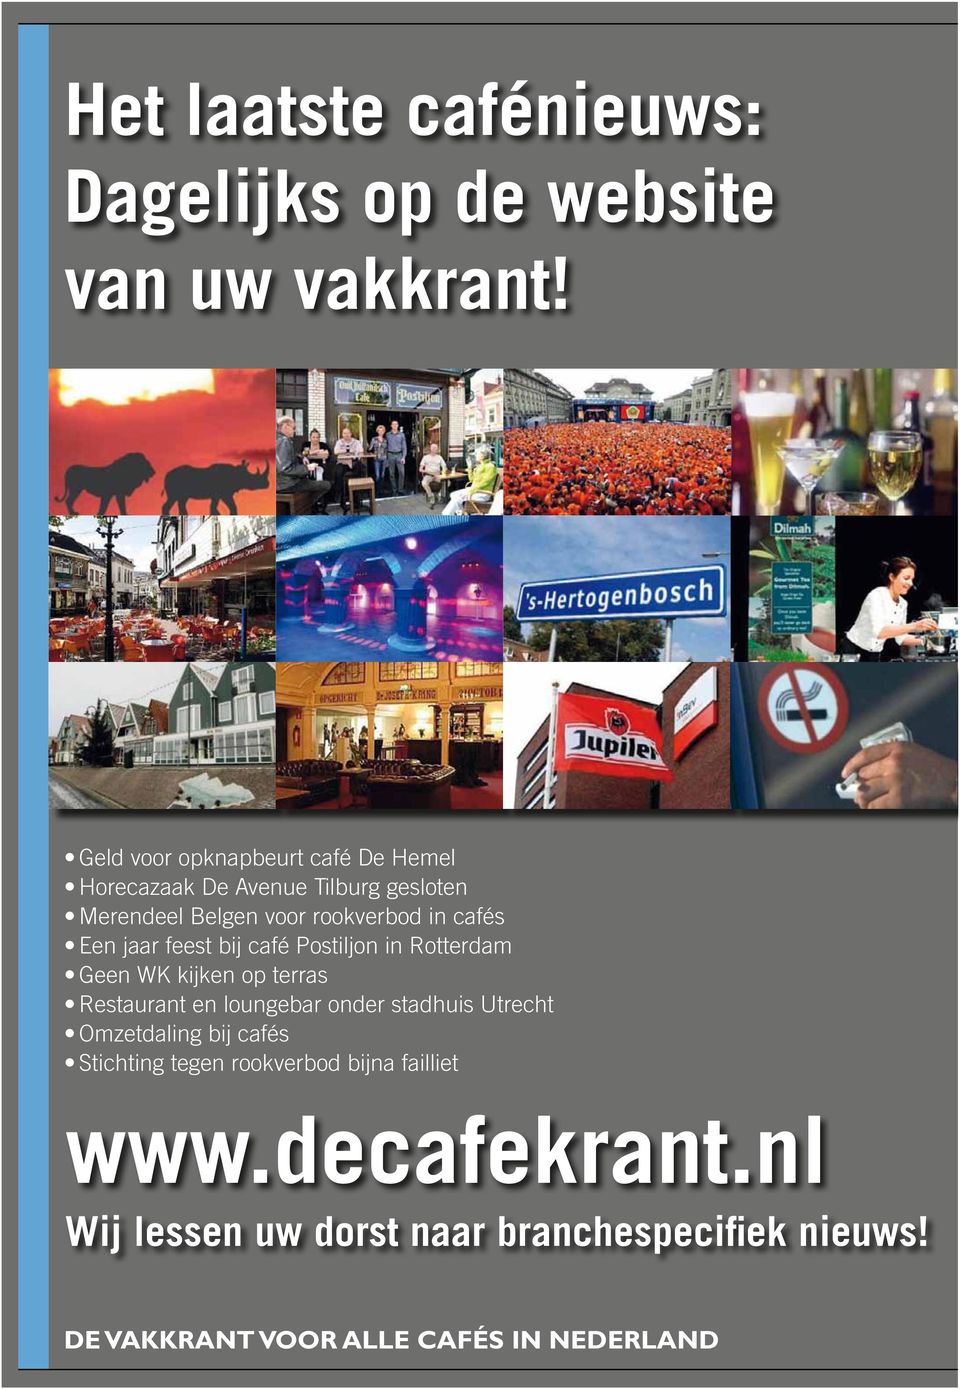 Een jaar feest bij café Postiljon in Rotterdam Geen WK kijken op terras Restaurant en loungebar onder stadhuis Utrecht